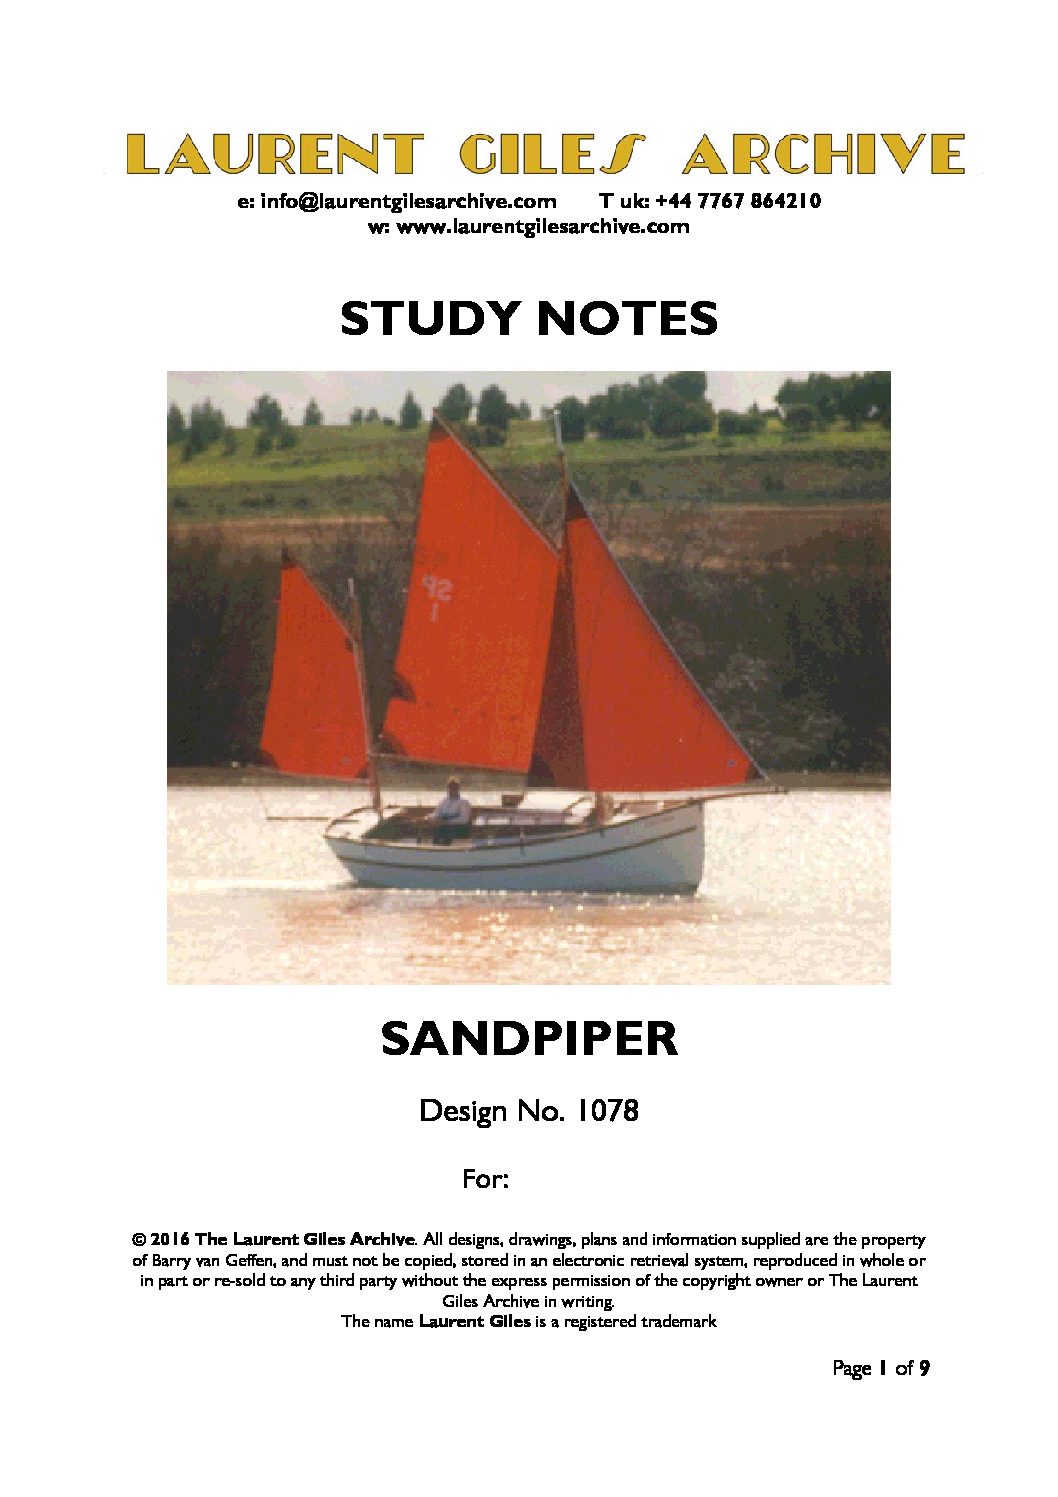 1078 Sandpiper Study Notes